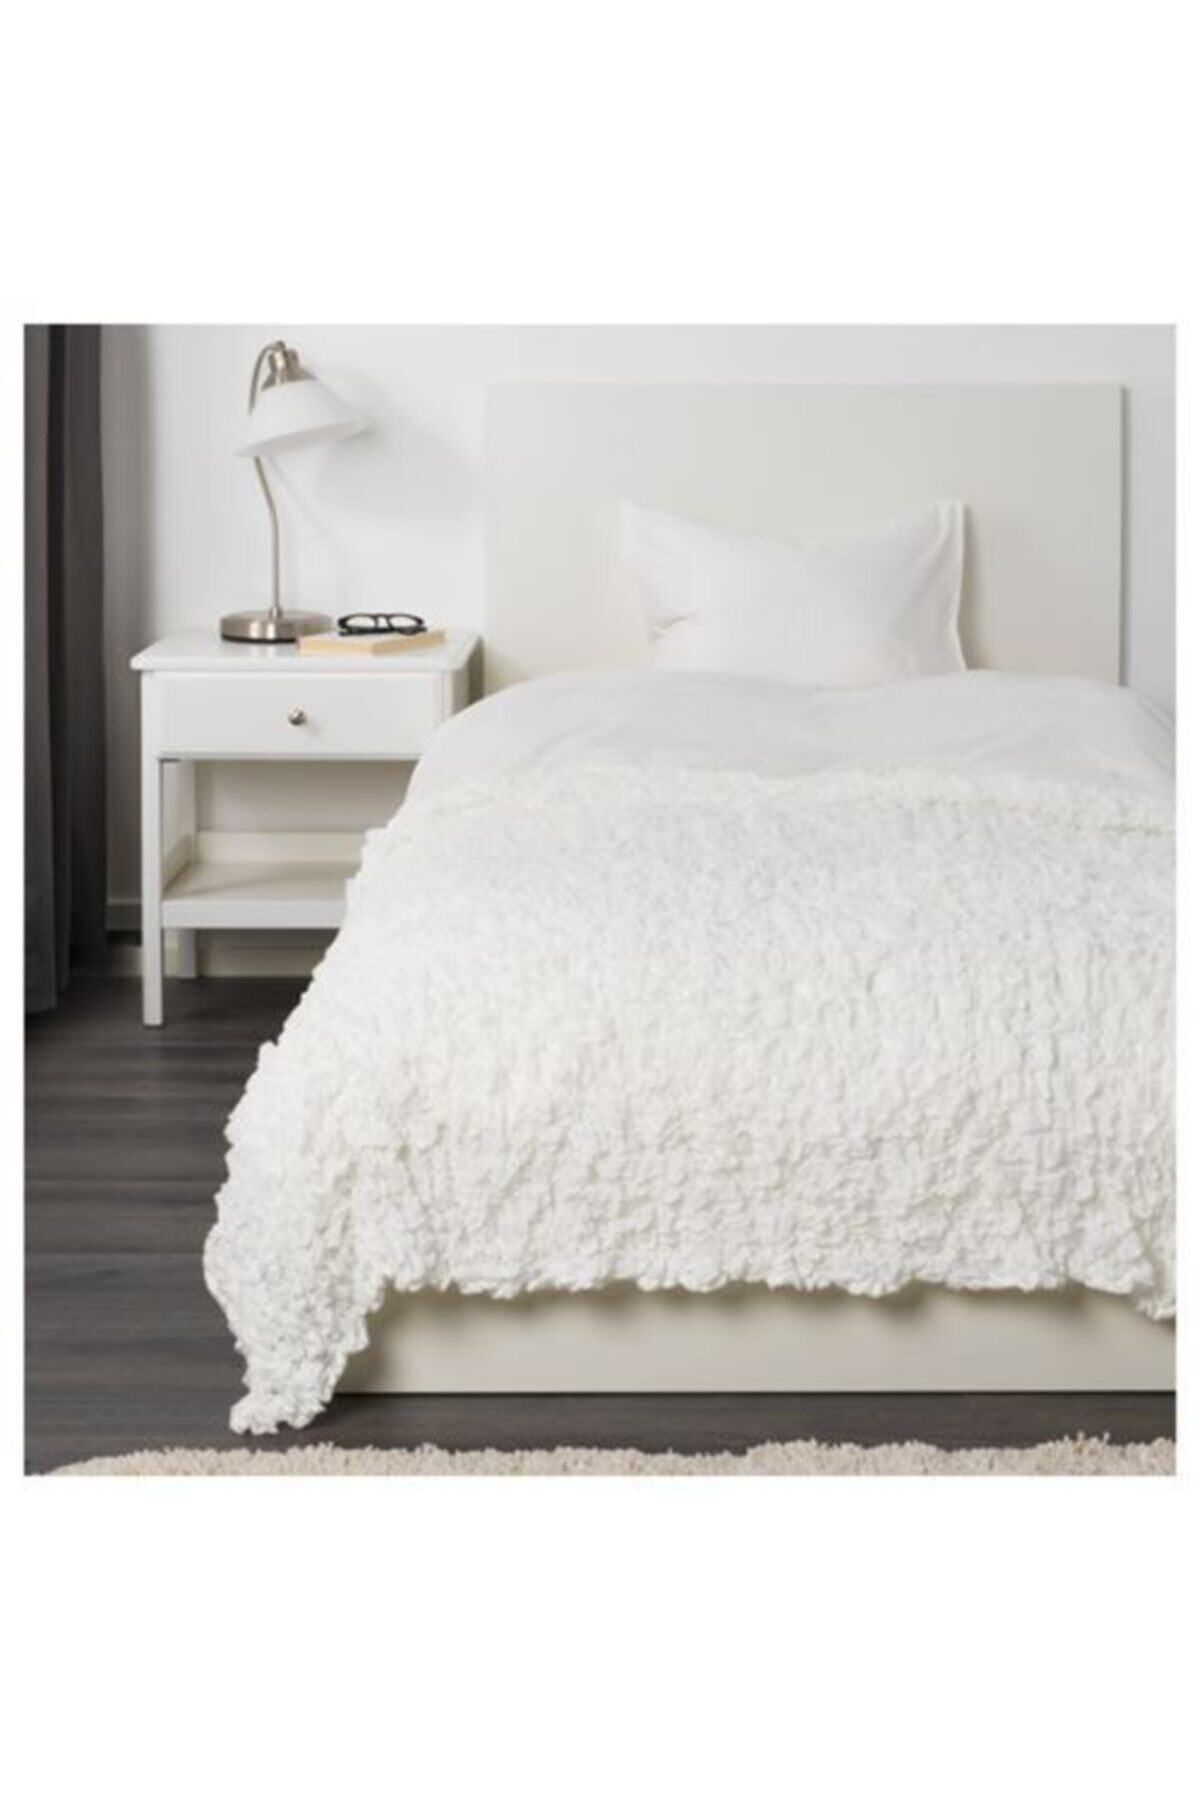 IKEA 130x170 Cm Örtü,battaniye Beyaz Meridyendukkan Ev Tekstili Ürünler Yatak Örtüsü